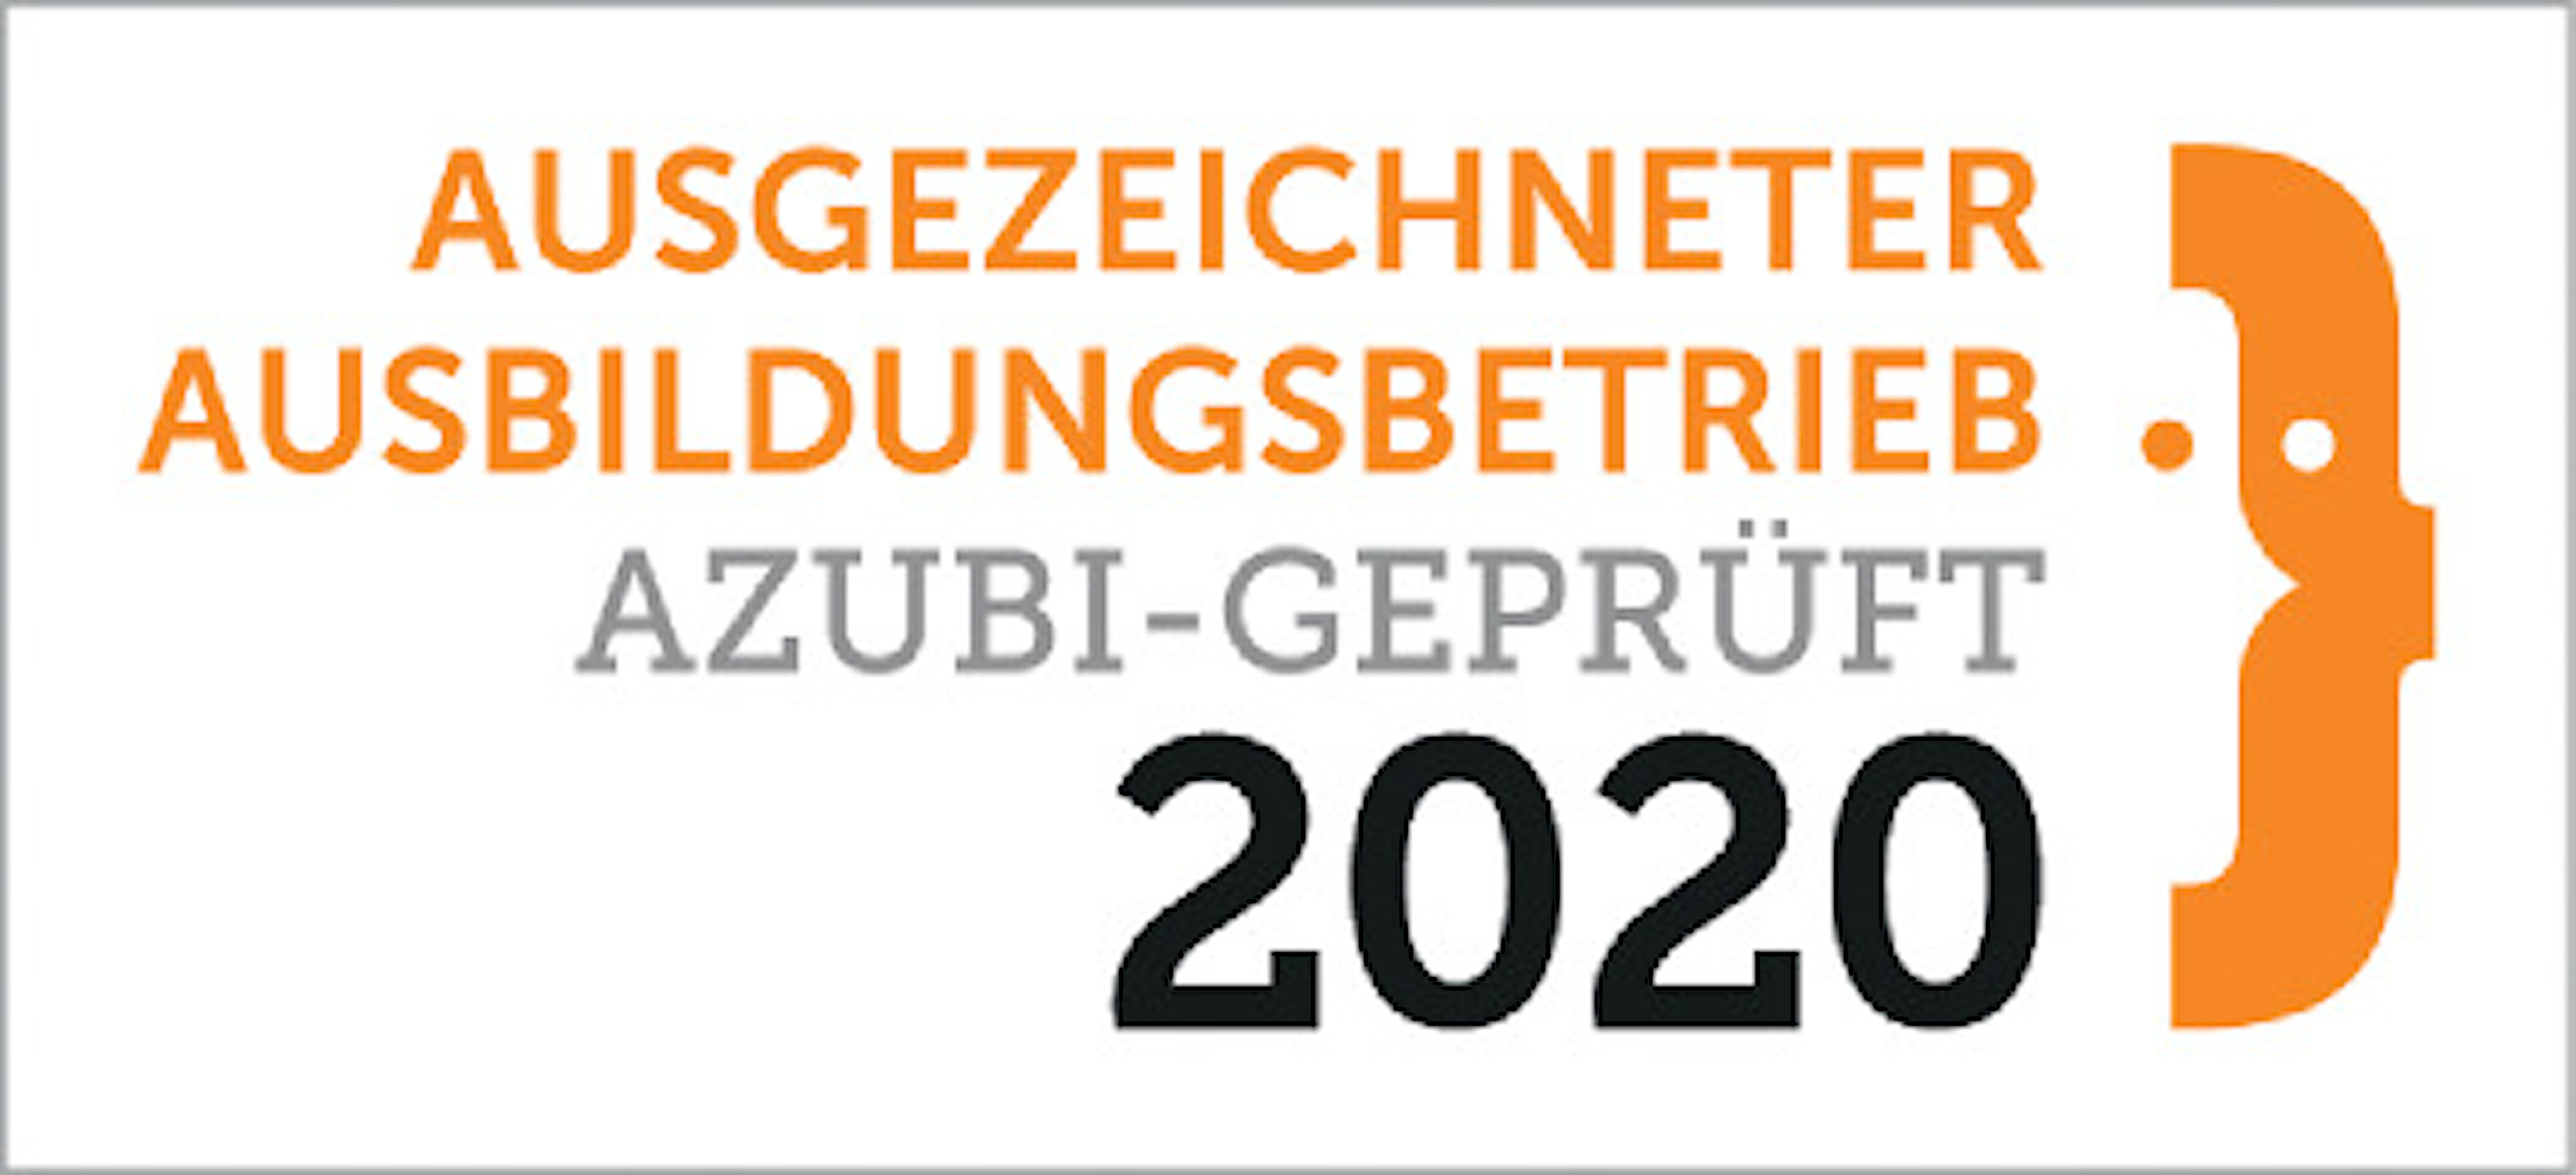 Ausgezeichneter Ausbildungsbetrieb 2020